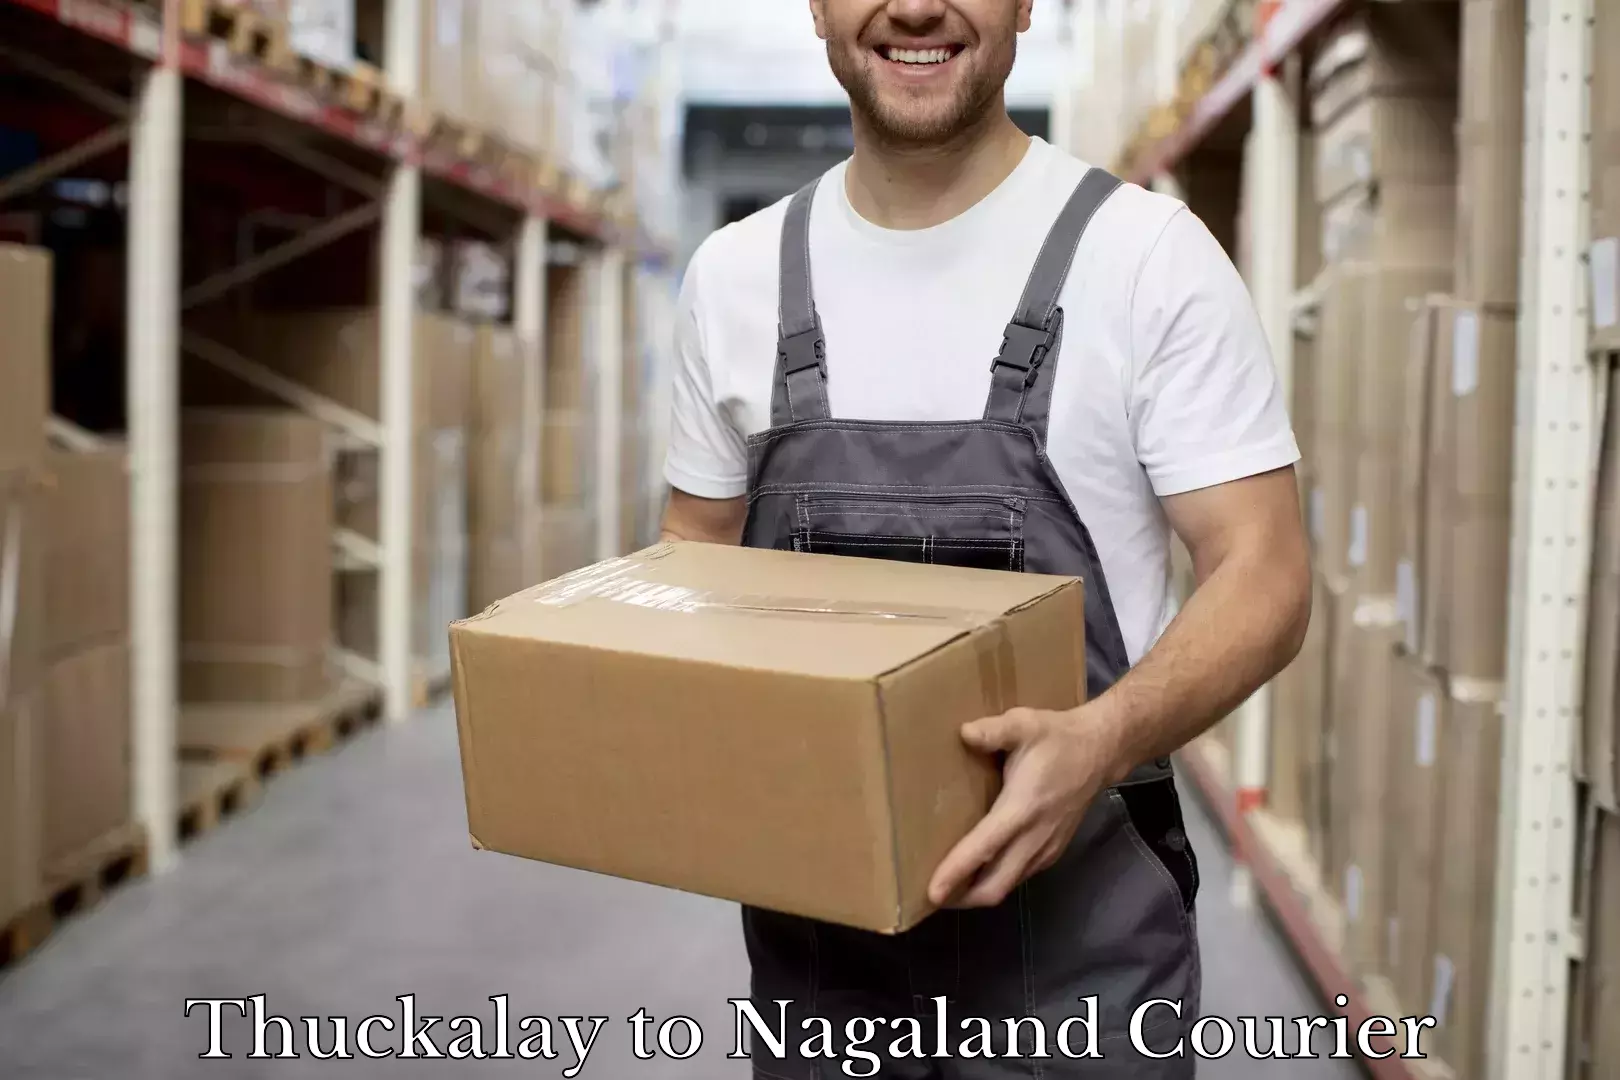 Baggage delivery optimization Thuckalay to Nagaland